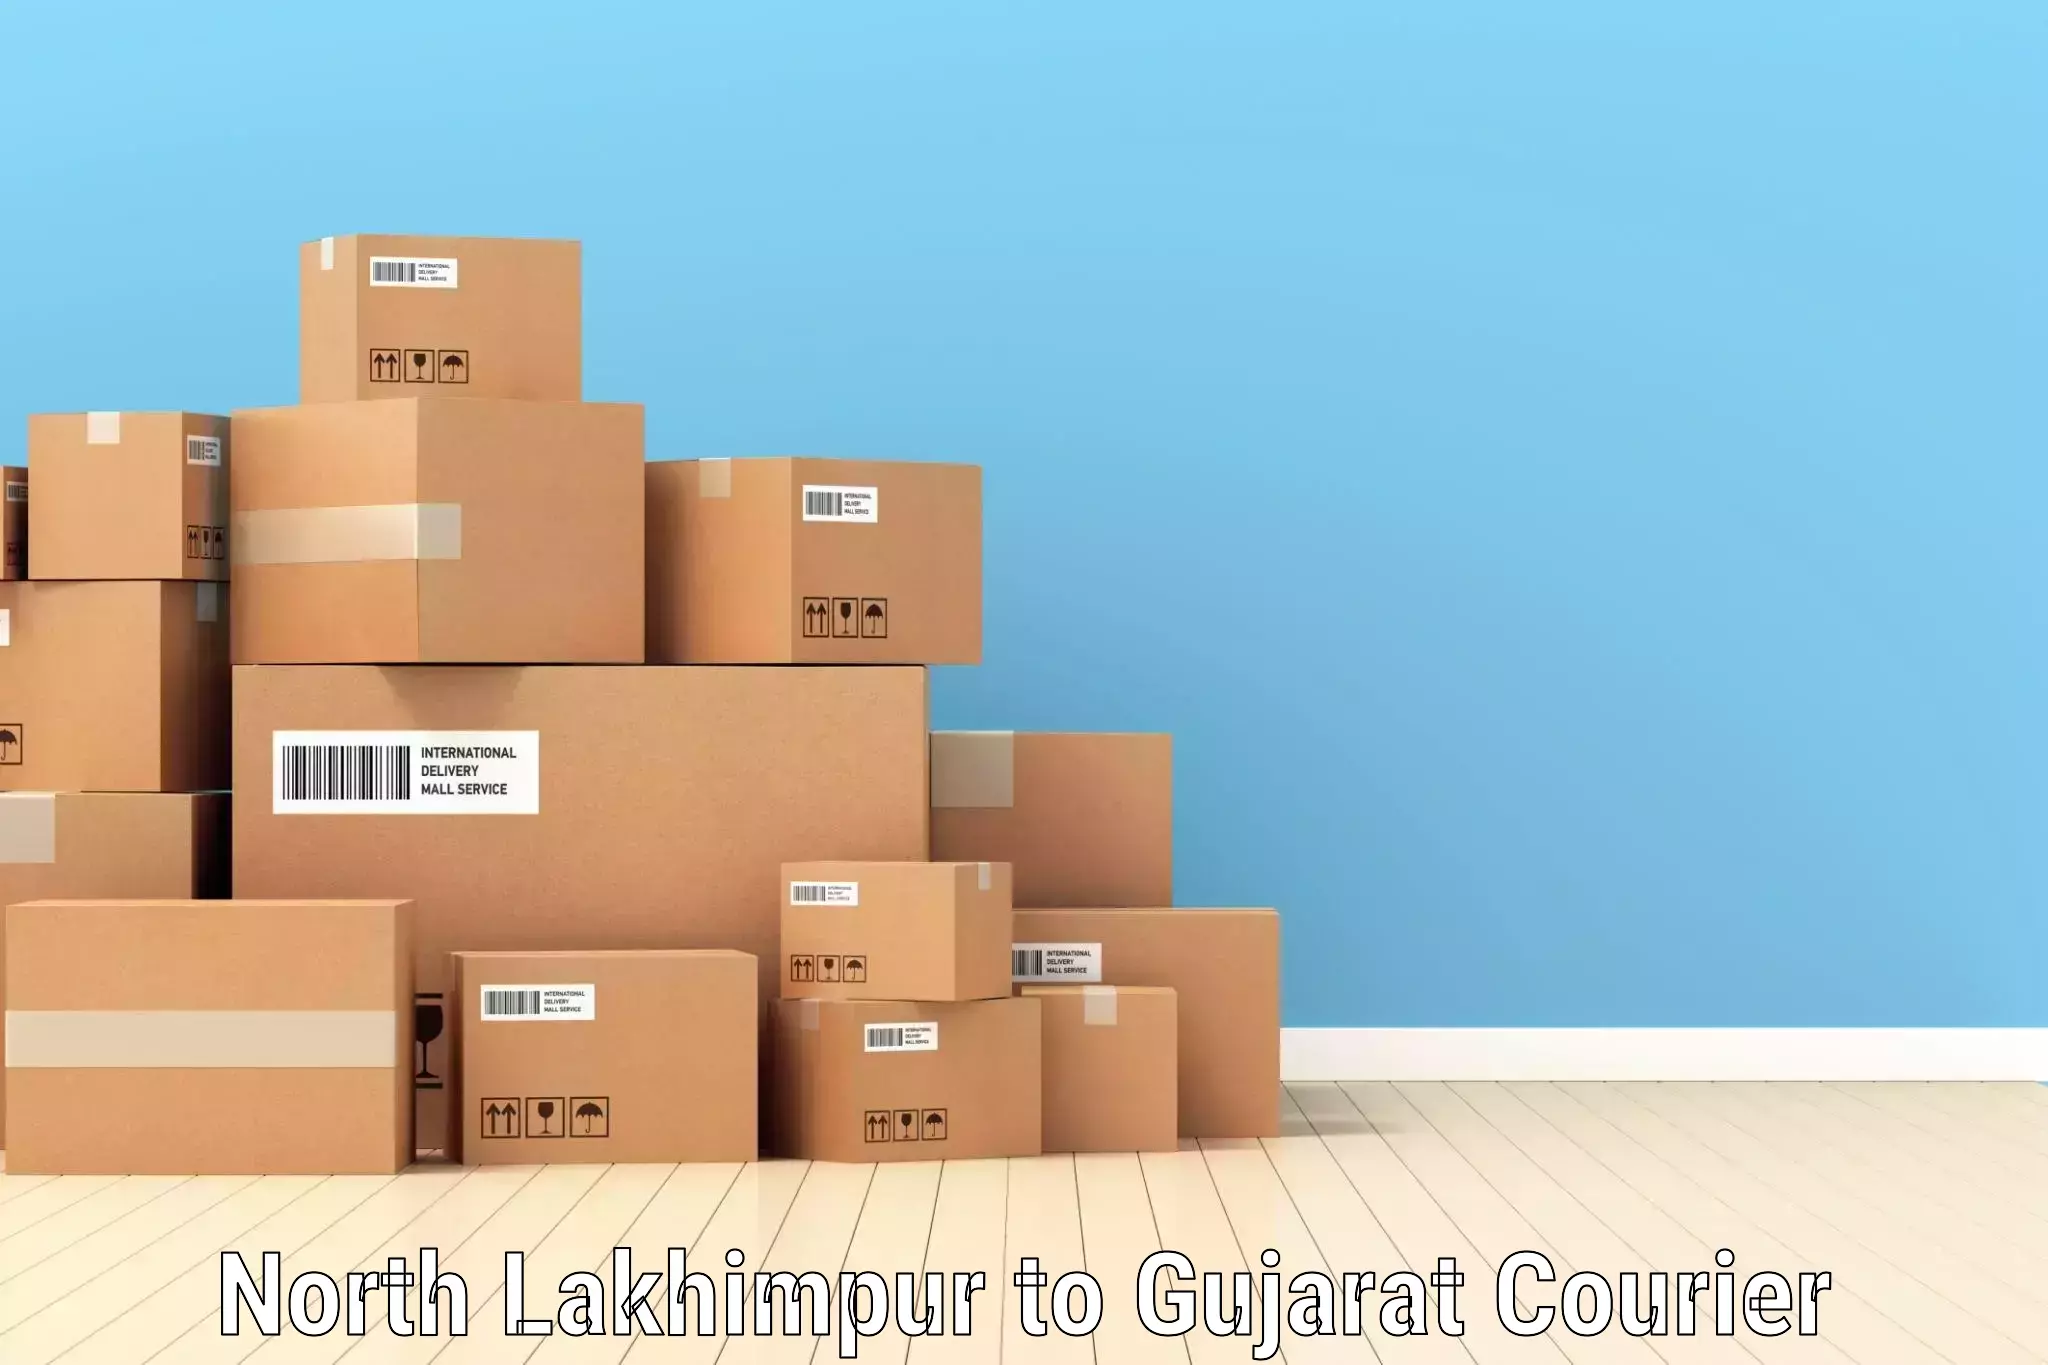 Cash on delivery service North Lakhimpur to Kandla Port